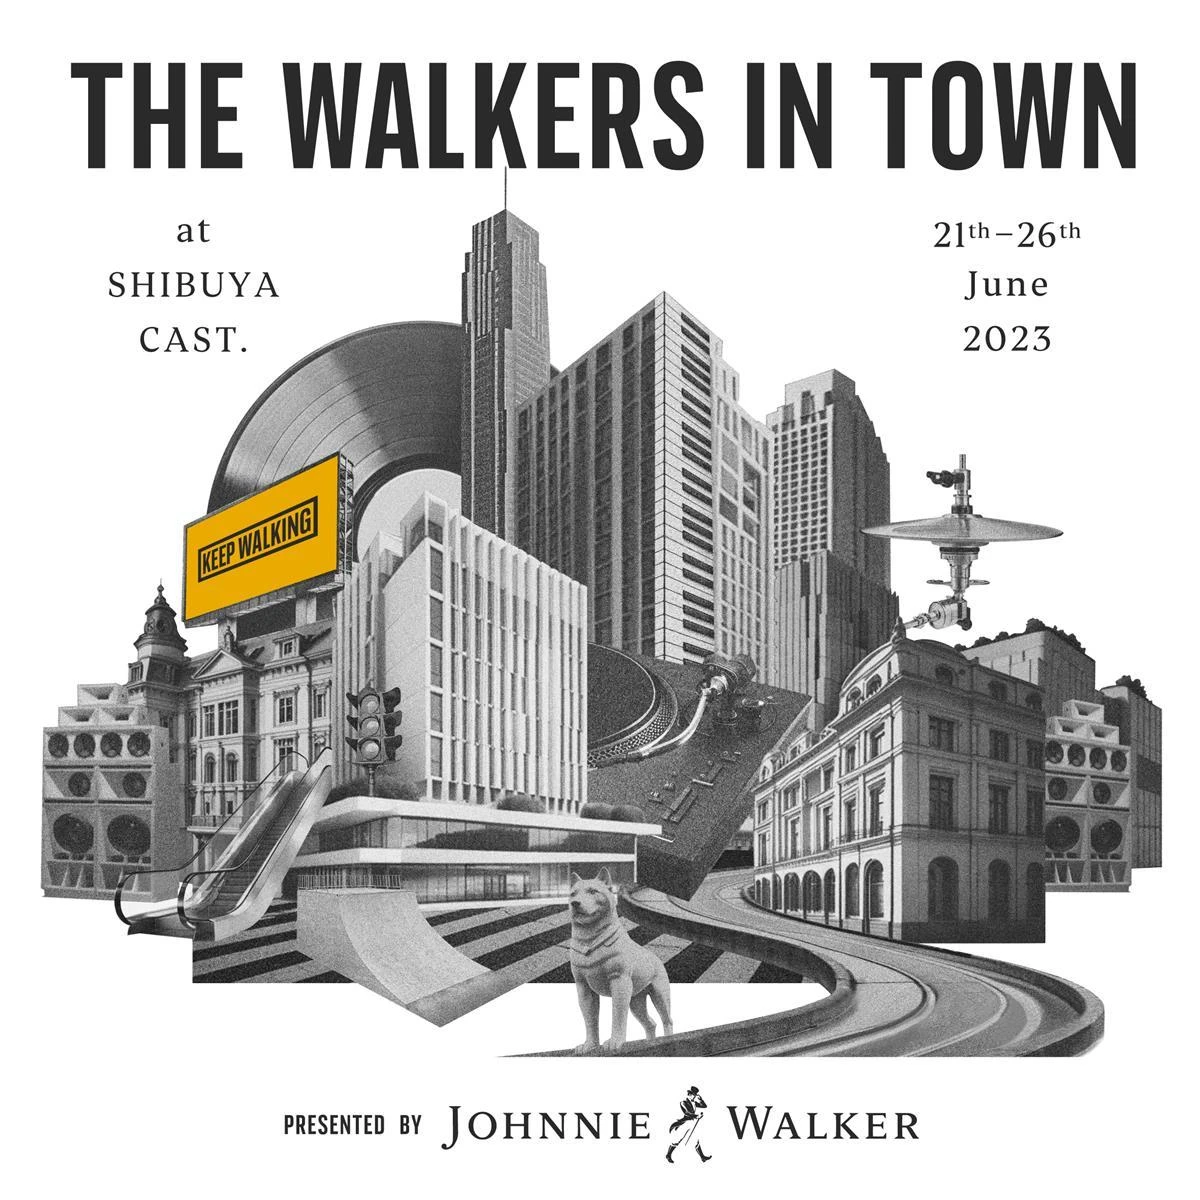 体験型イベント「THE WALKERS IN TOWN presented by JOHNNIE WALKER」